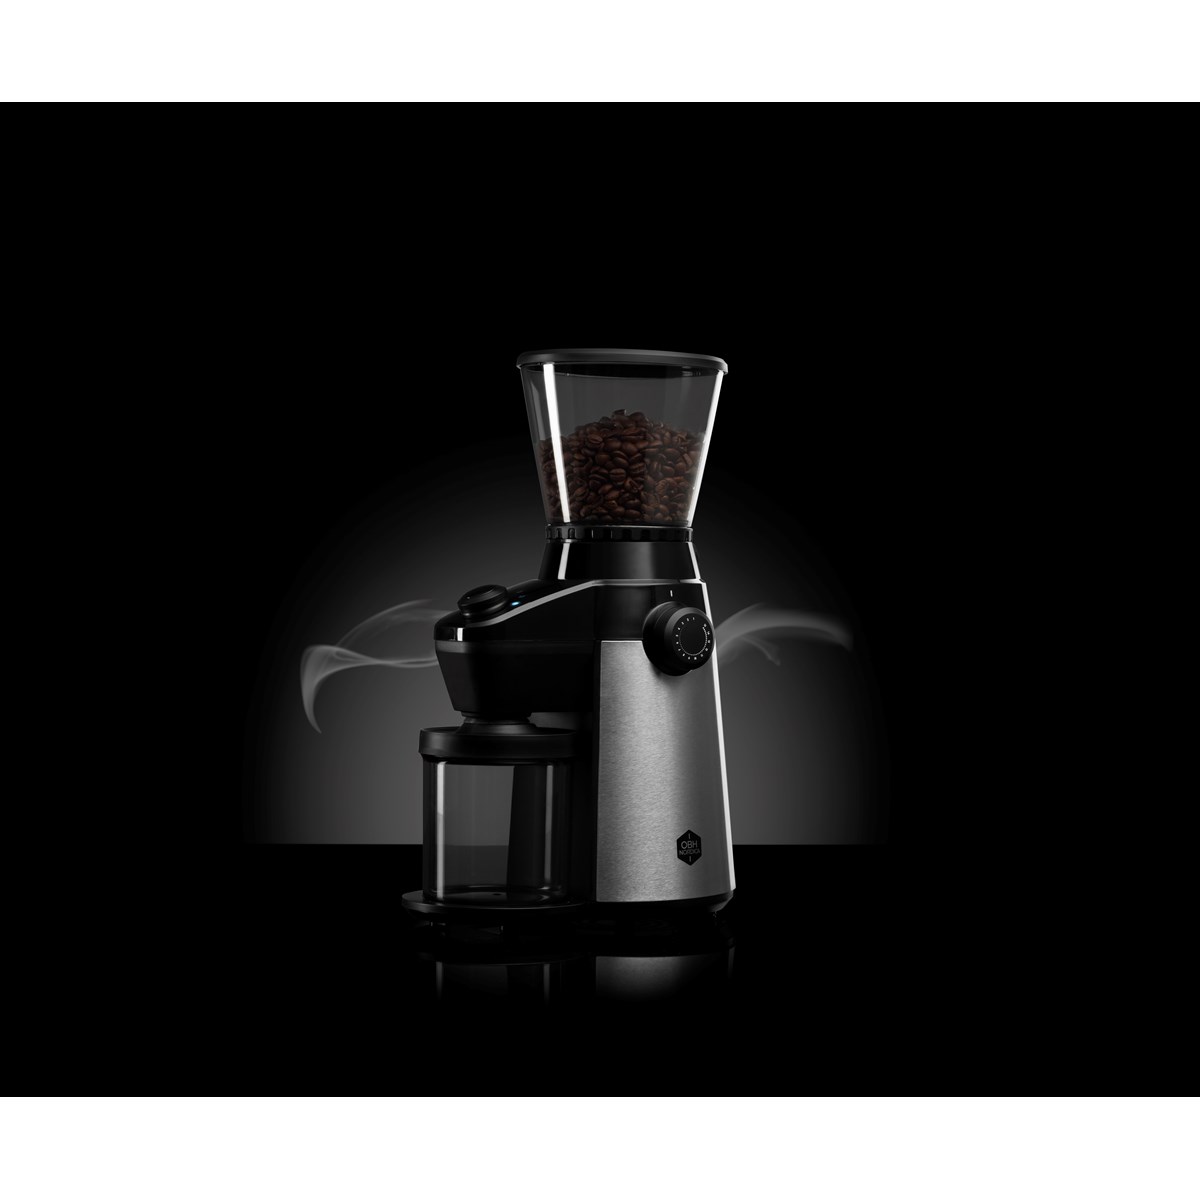 OBH, coffee grinder concial precision